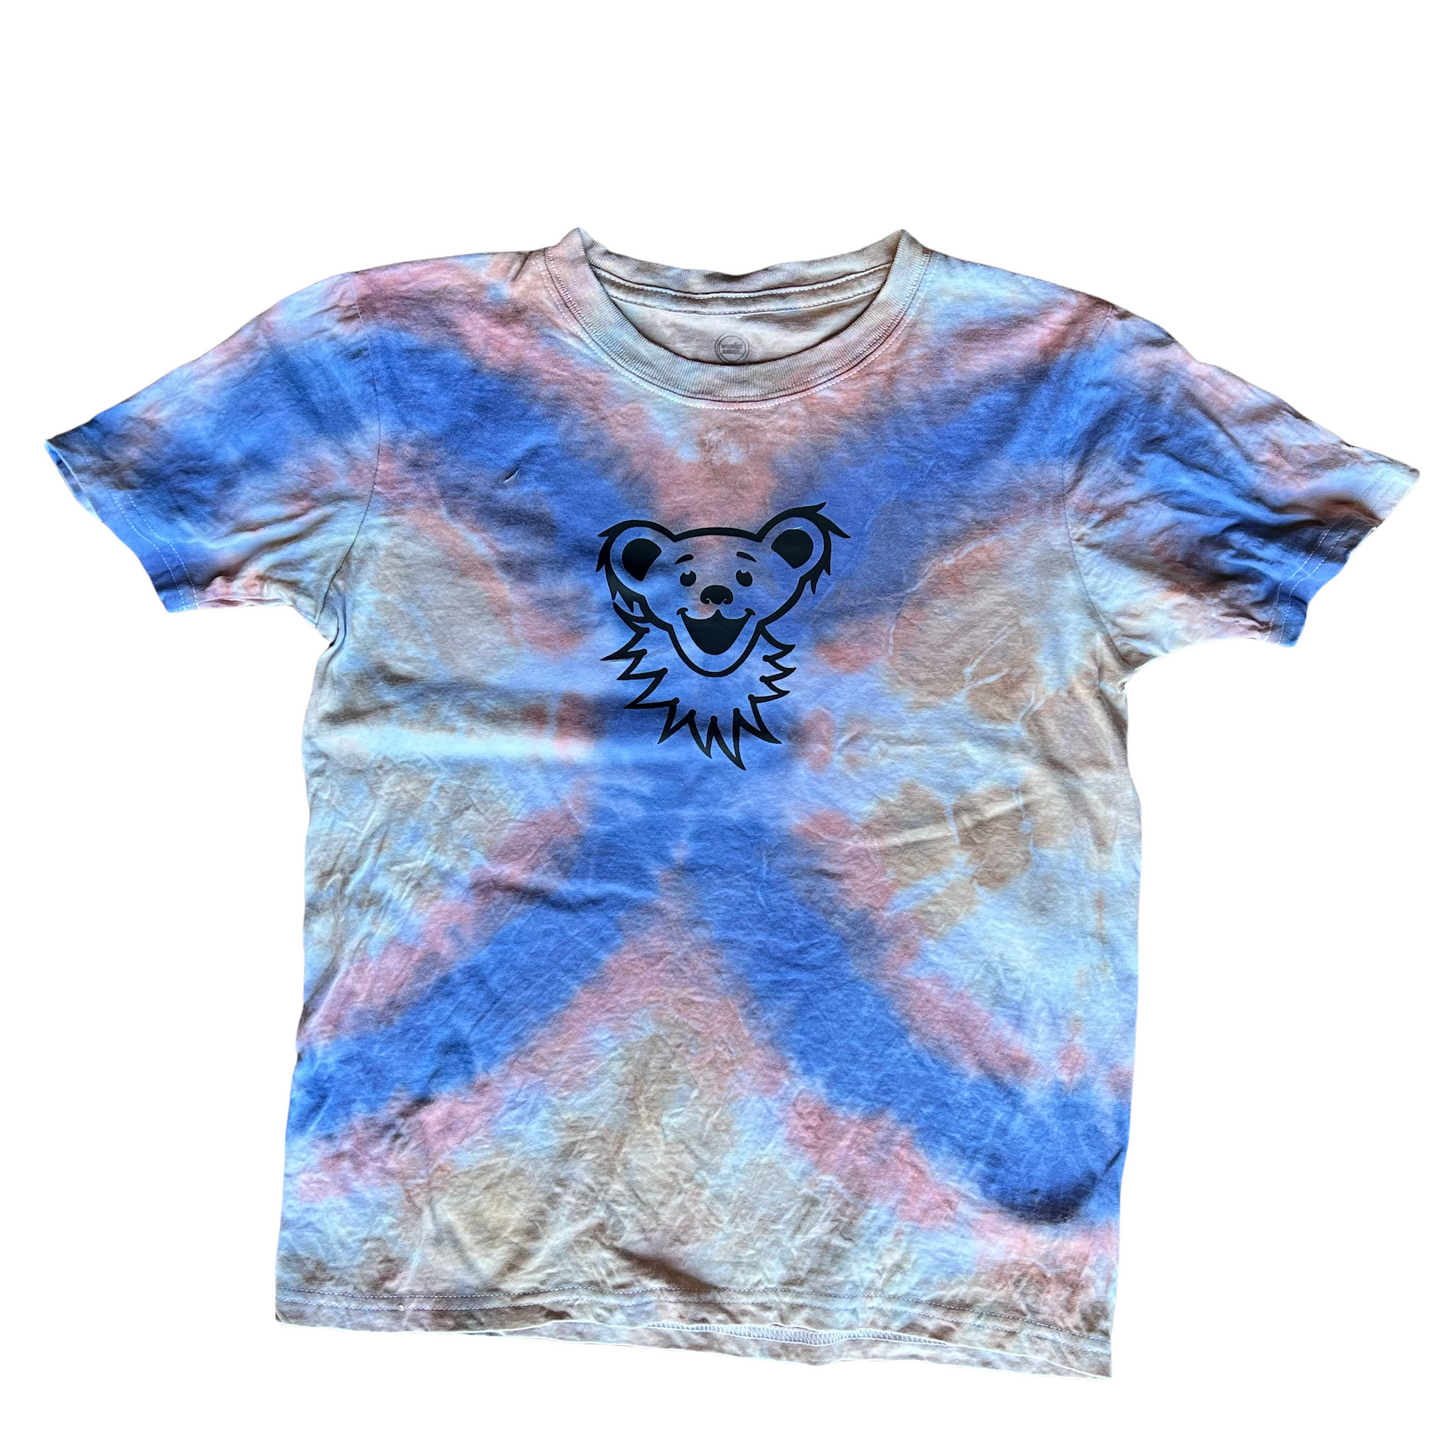 Large size 10/12 kids dye shirt - bear